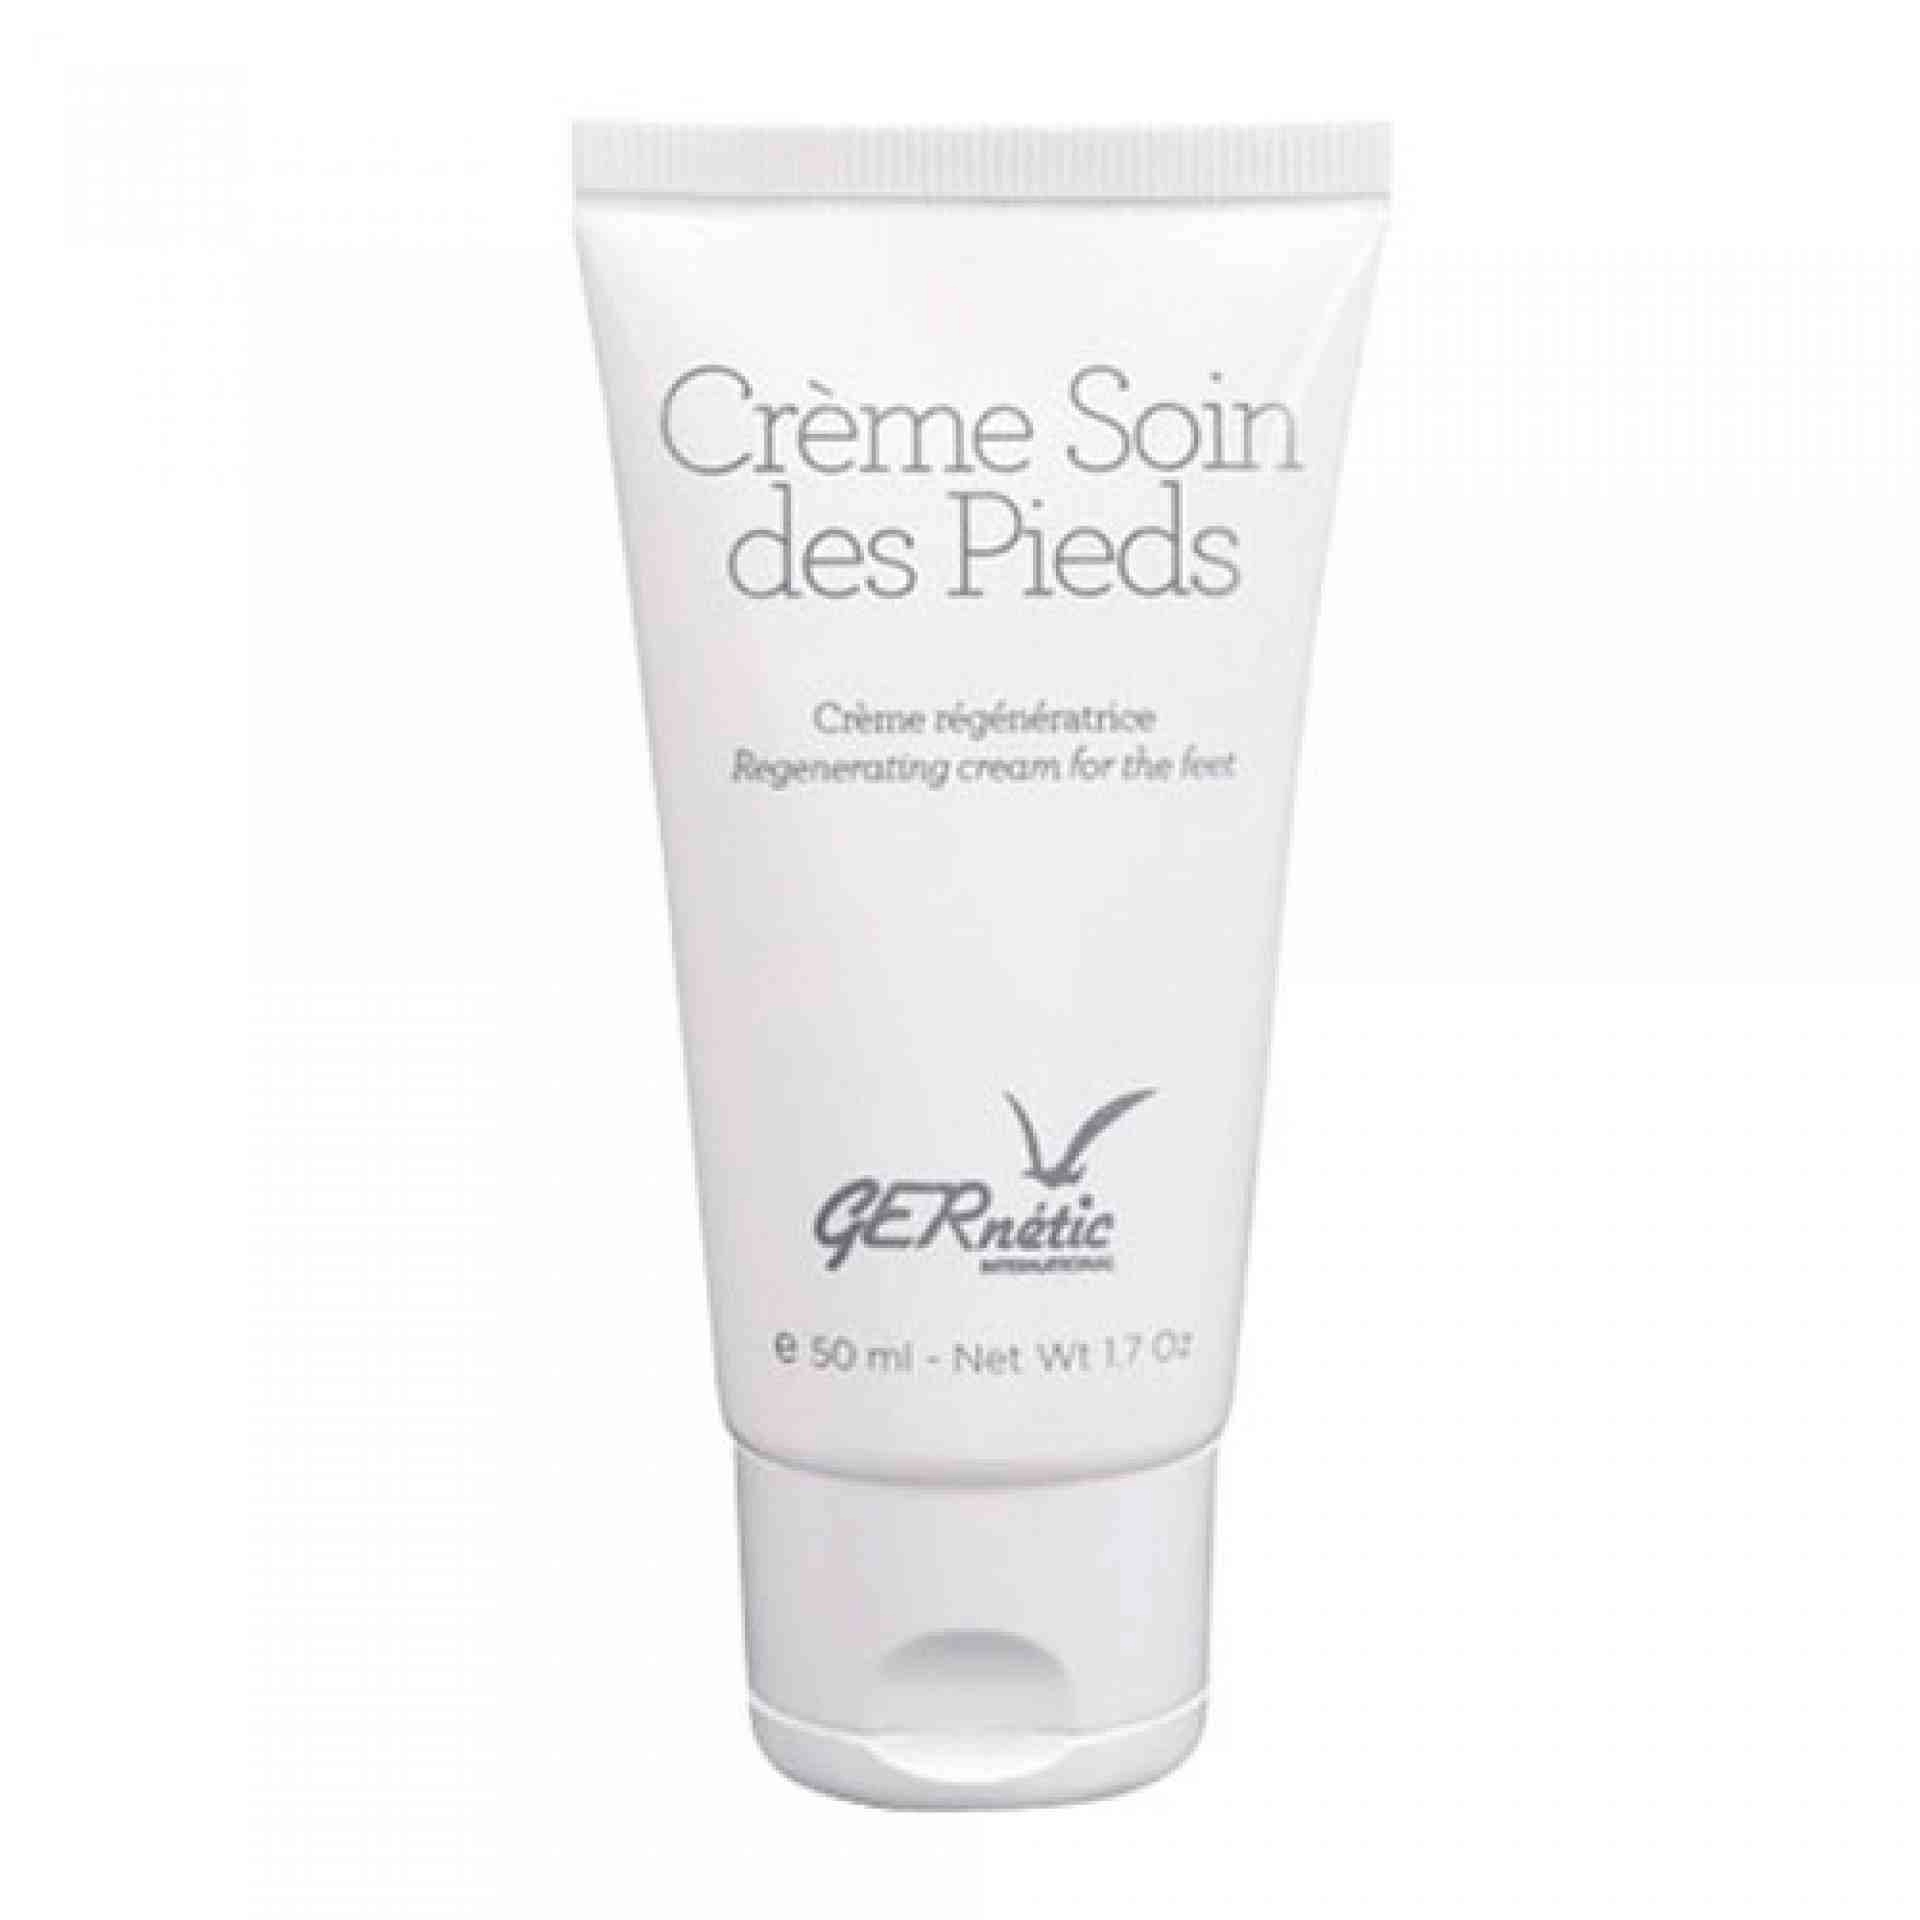 Crème Soin des Pieds | Crema para los pies 50ml - Gernétic ®